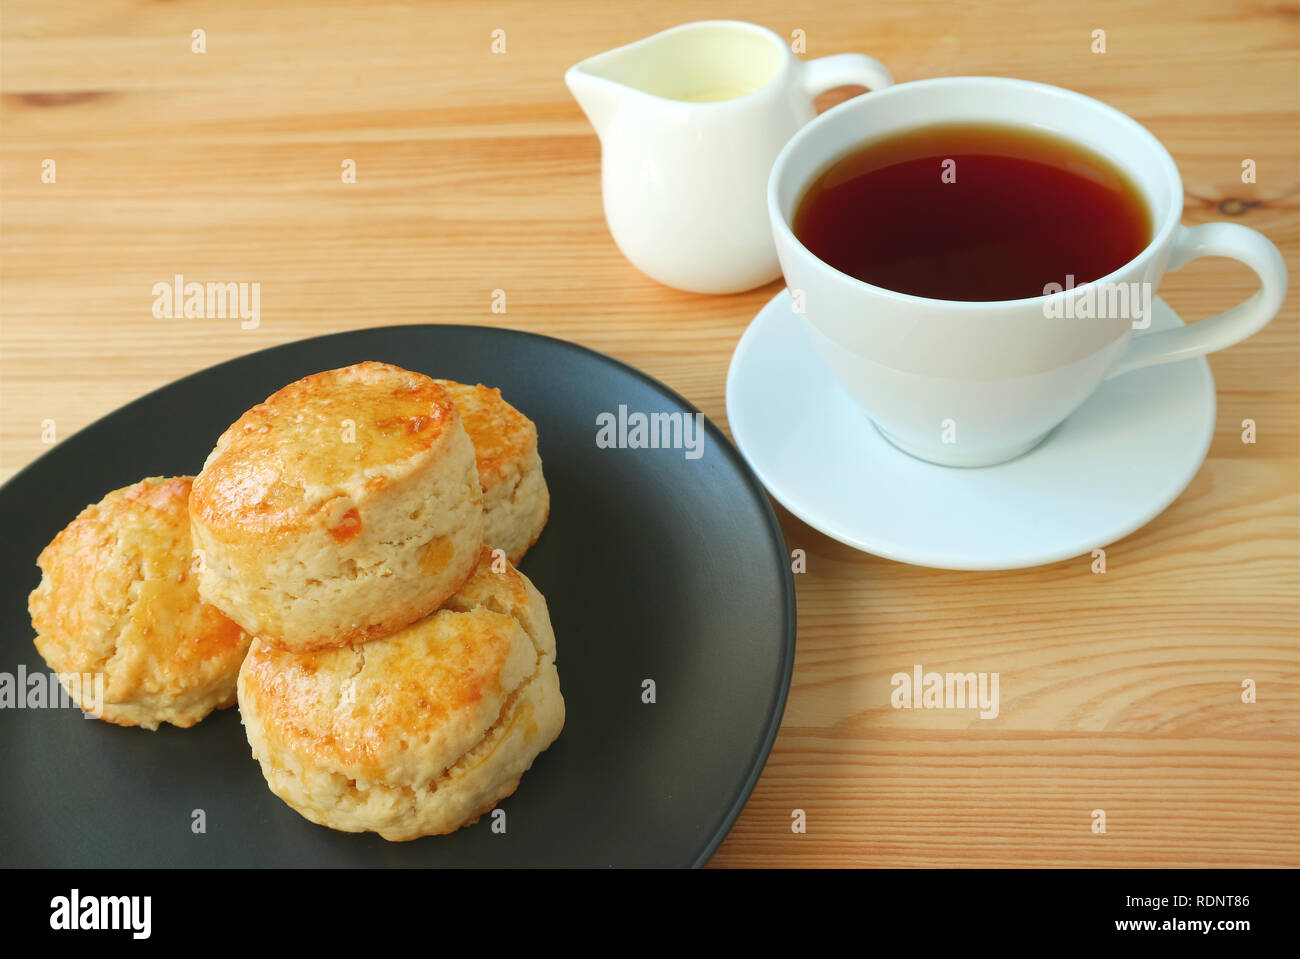 Eine Platte mit orangeat Scones und eine heiße Tasse Tee serviert auf hölzernen Tisch Stockfoto